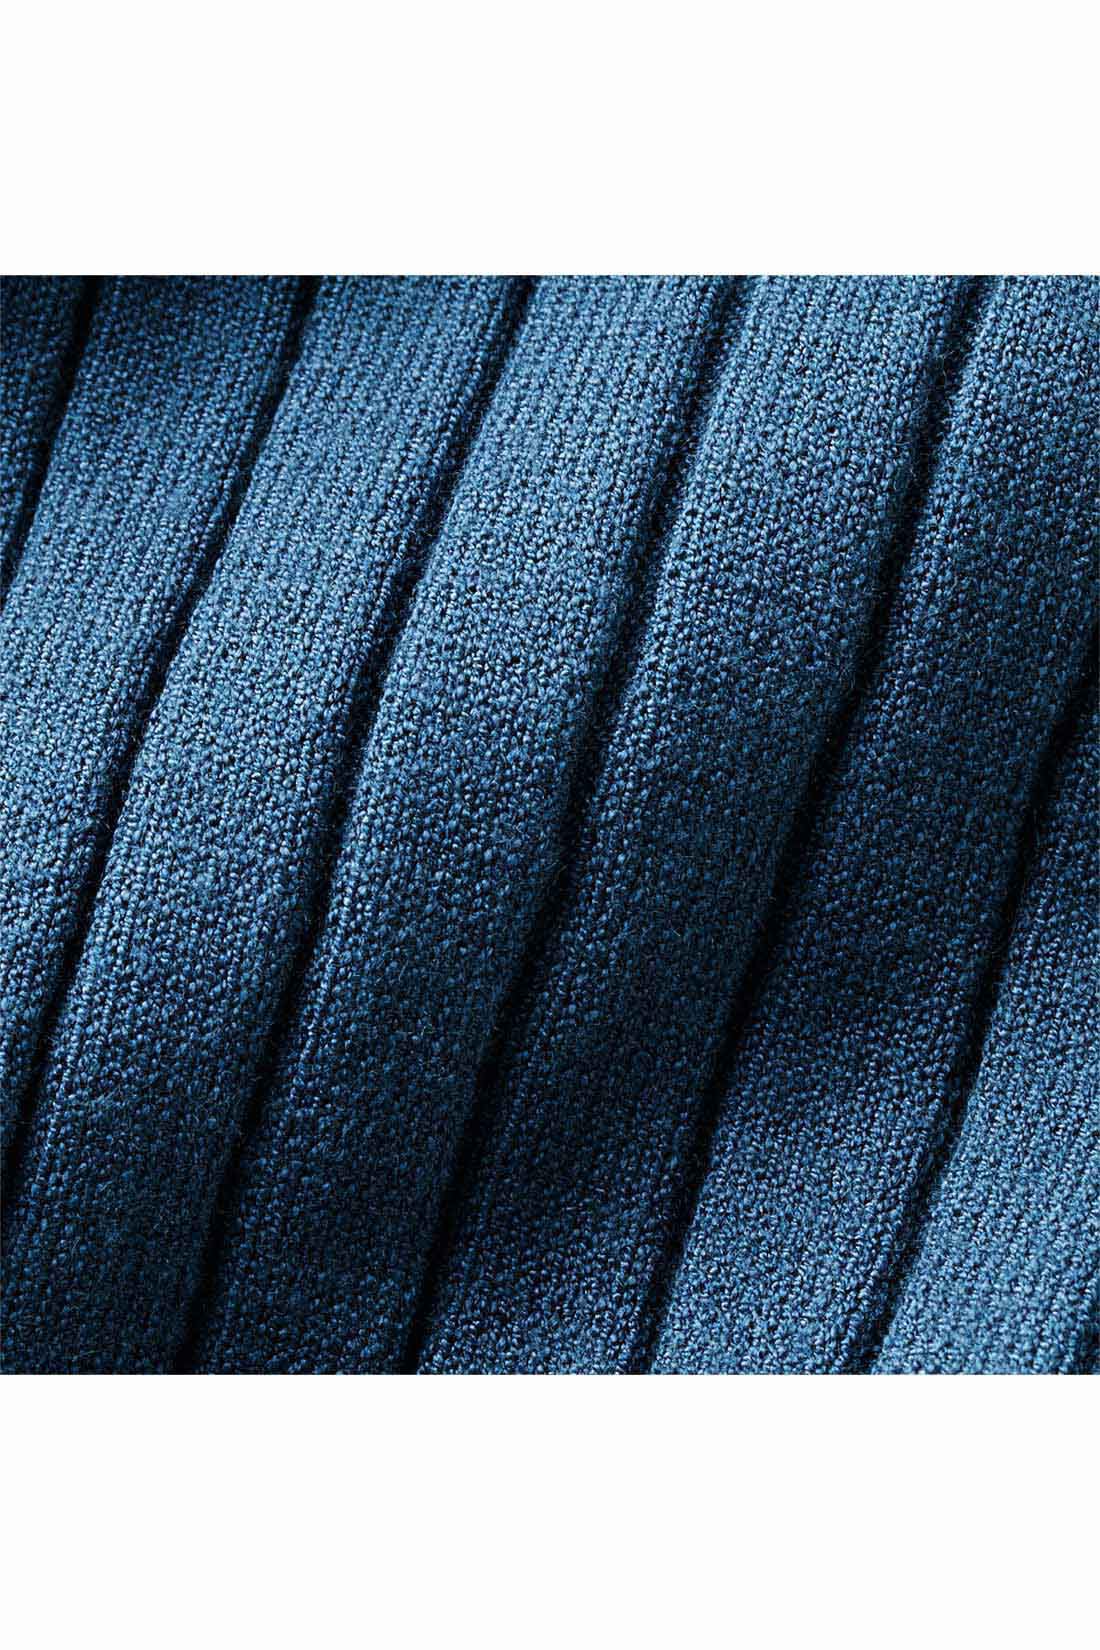 IEDIT|IEDIT[イディット]　キーネックデザインのワイドリブニットトップス〈ブルー〉|滑らかな肌ざわりのレーヨン混素材のワイドリブニット。 ※お届けするカラーとは異なります。